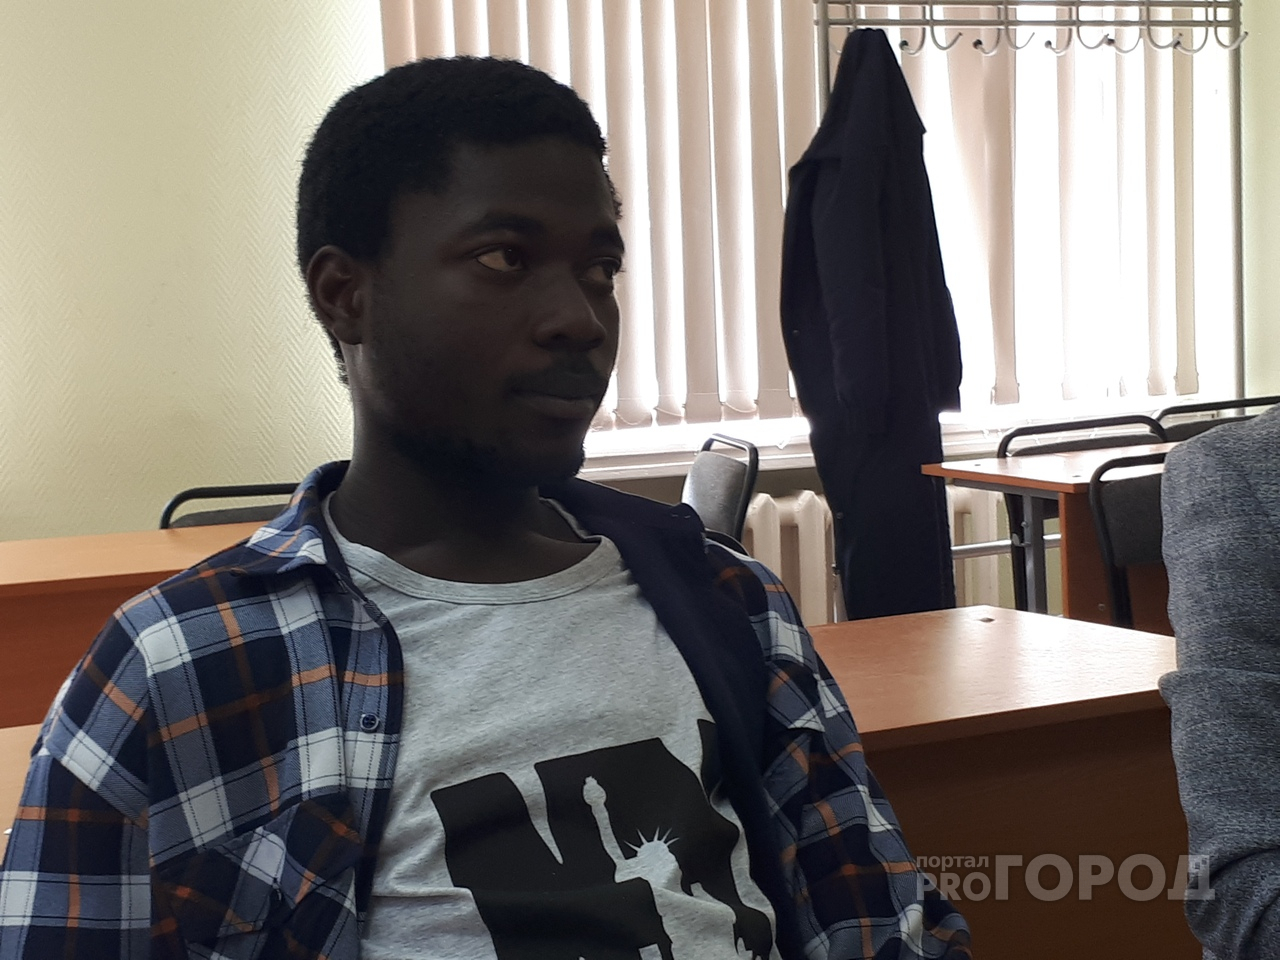 "Пакет надо": что шокировало африканцев в России